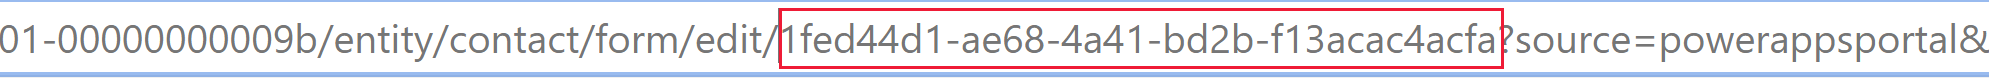 Идентификатор формы можно найти в URL-адресе браузера, если открыть форму в современном конструкторе форм.